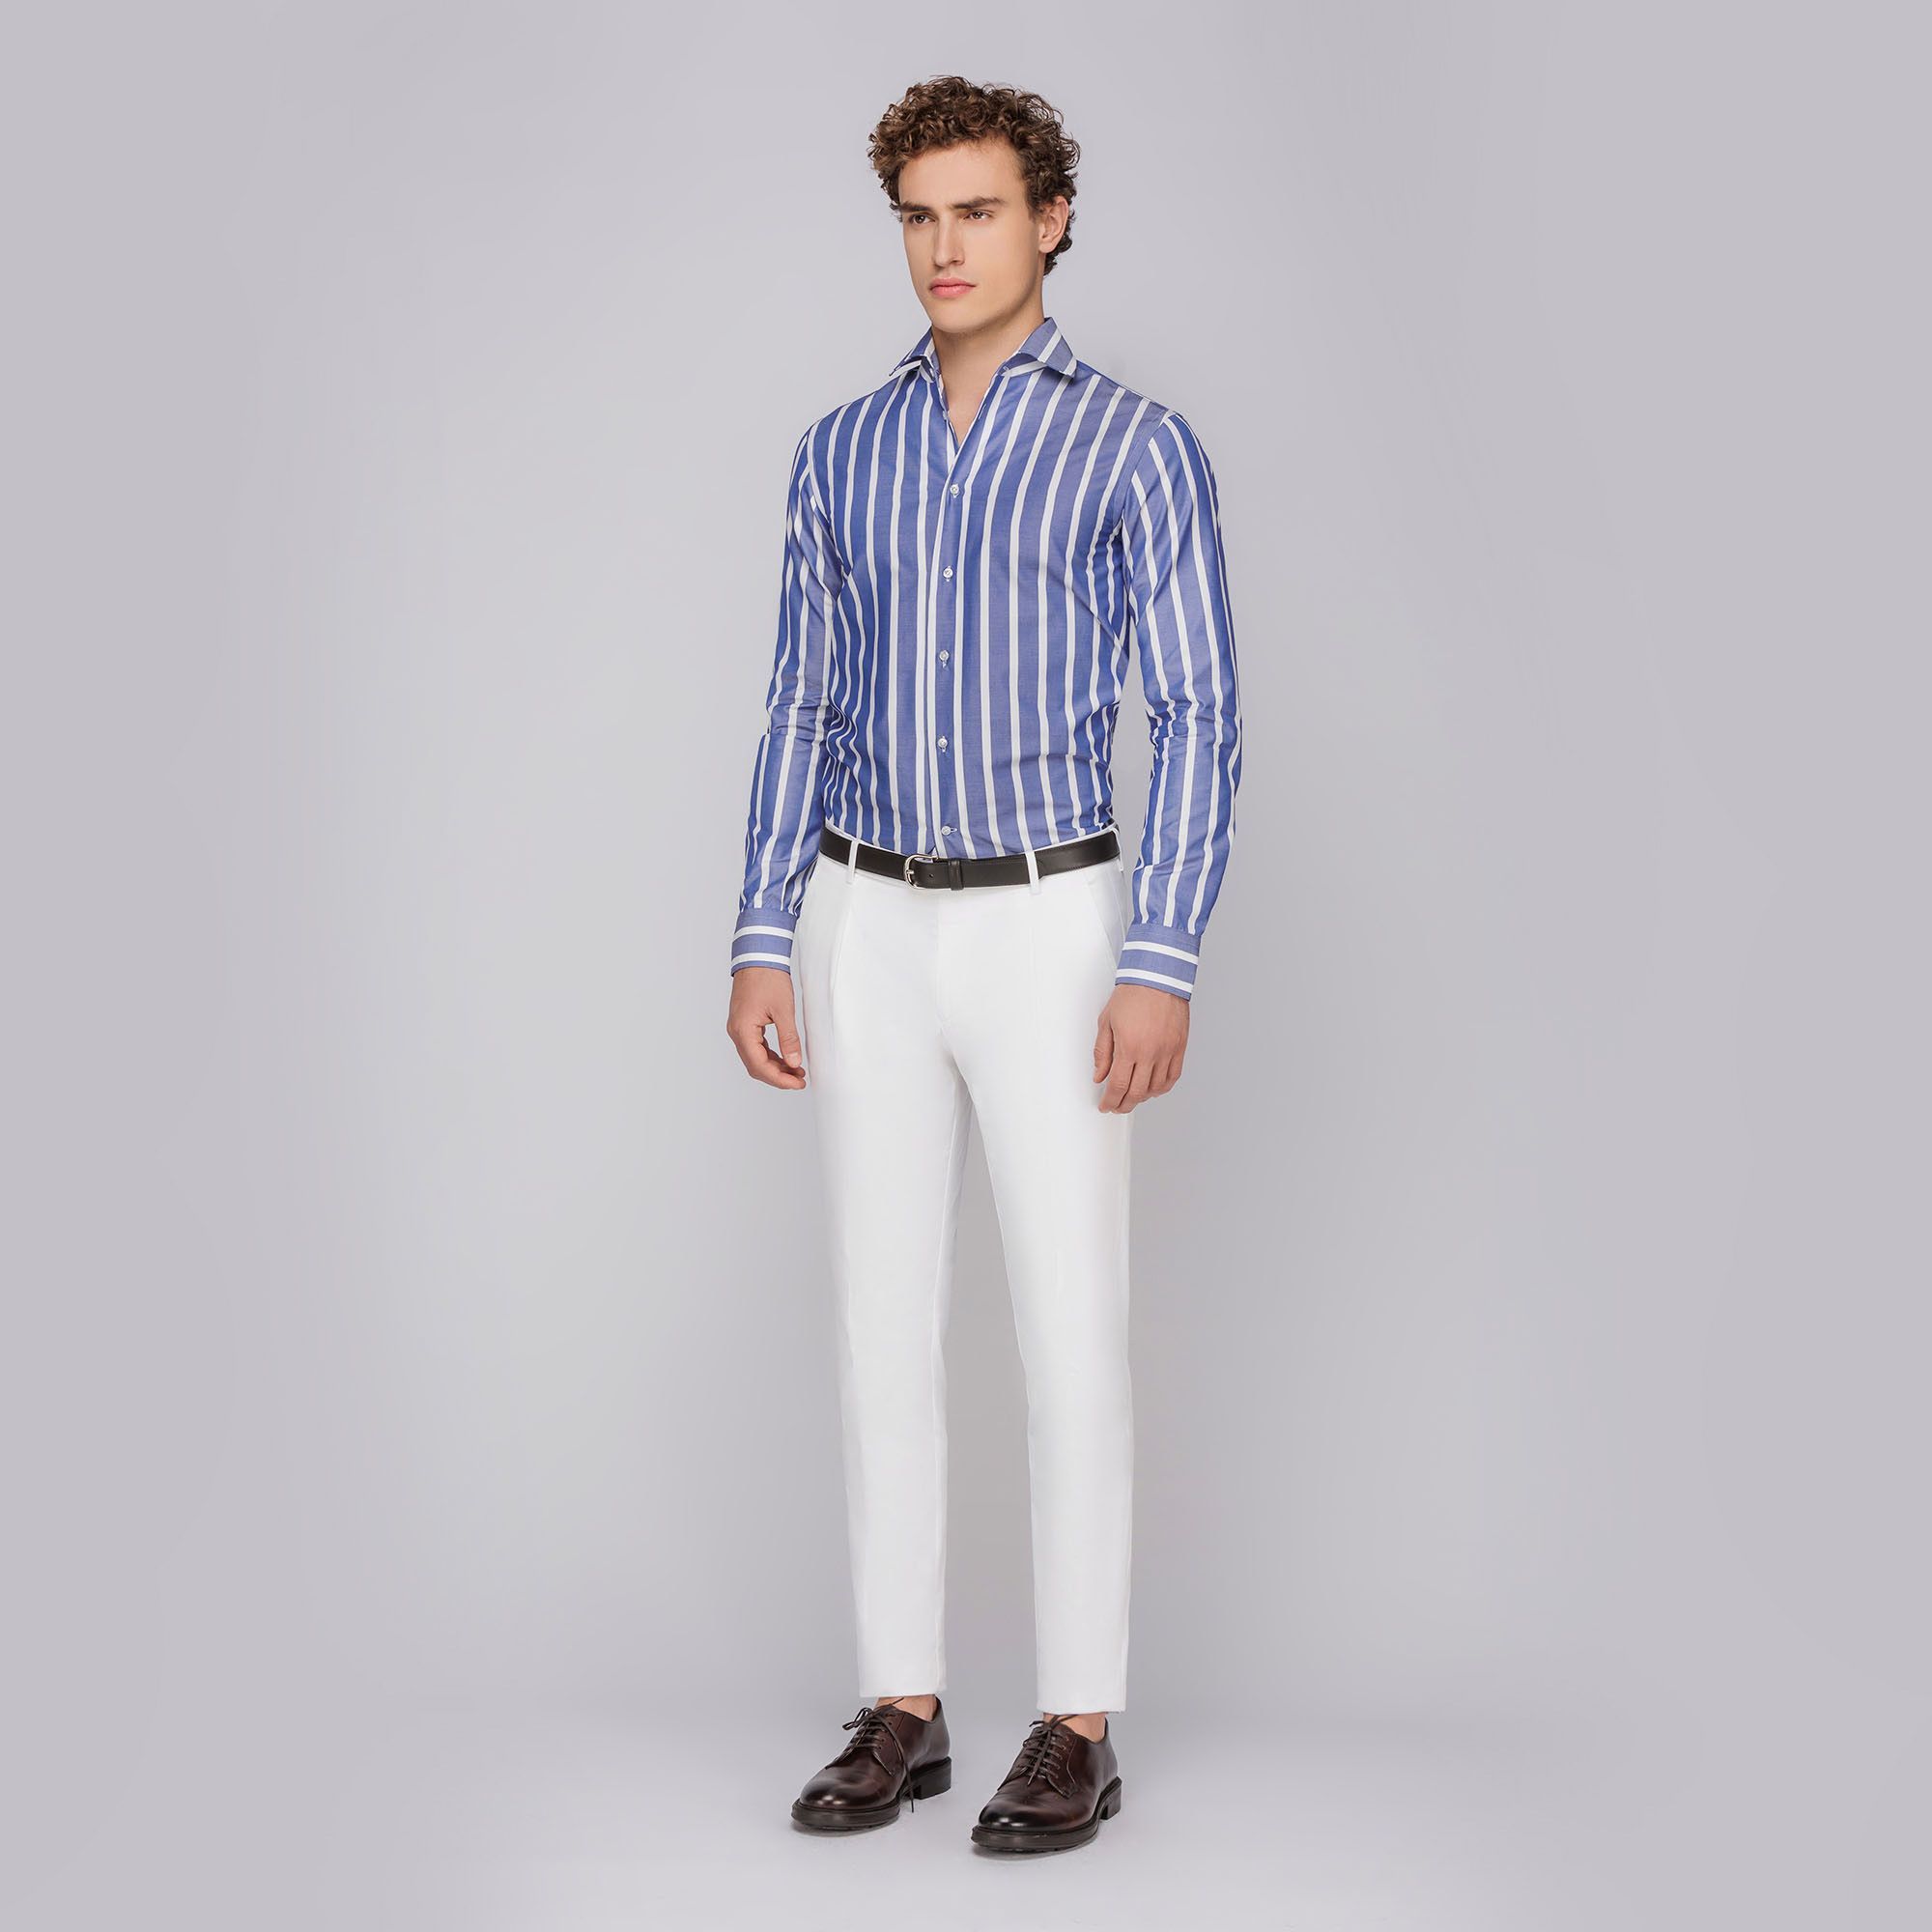 Men's bold striped royal blue cotton shirt